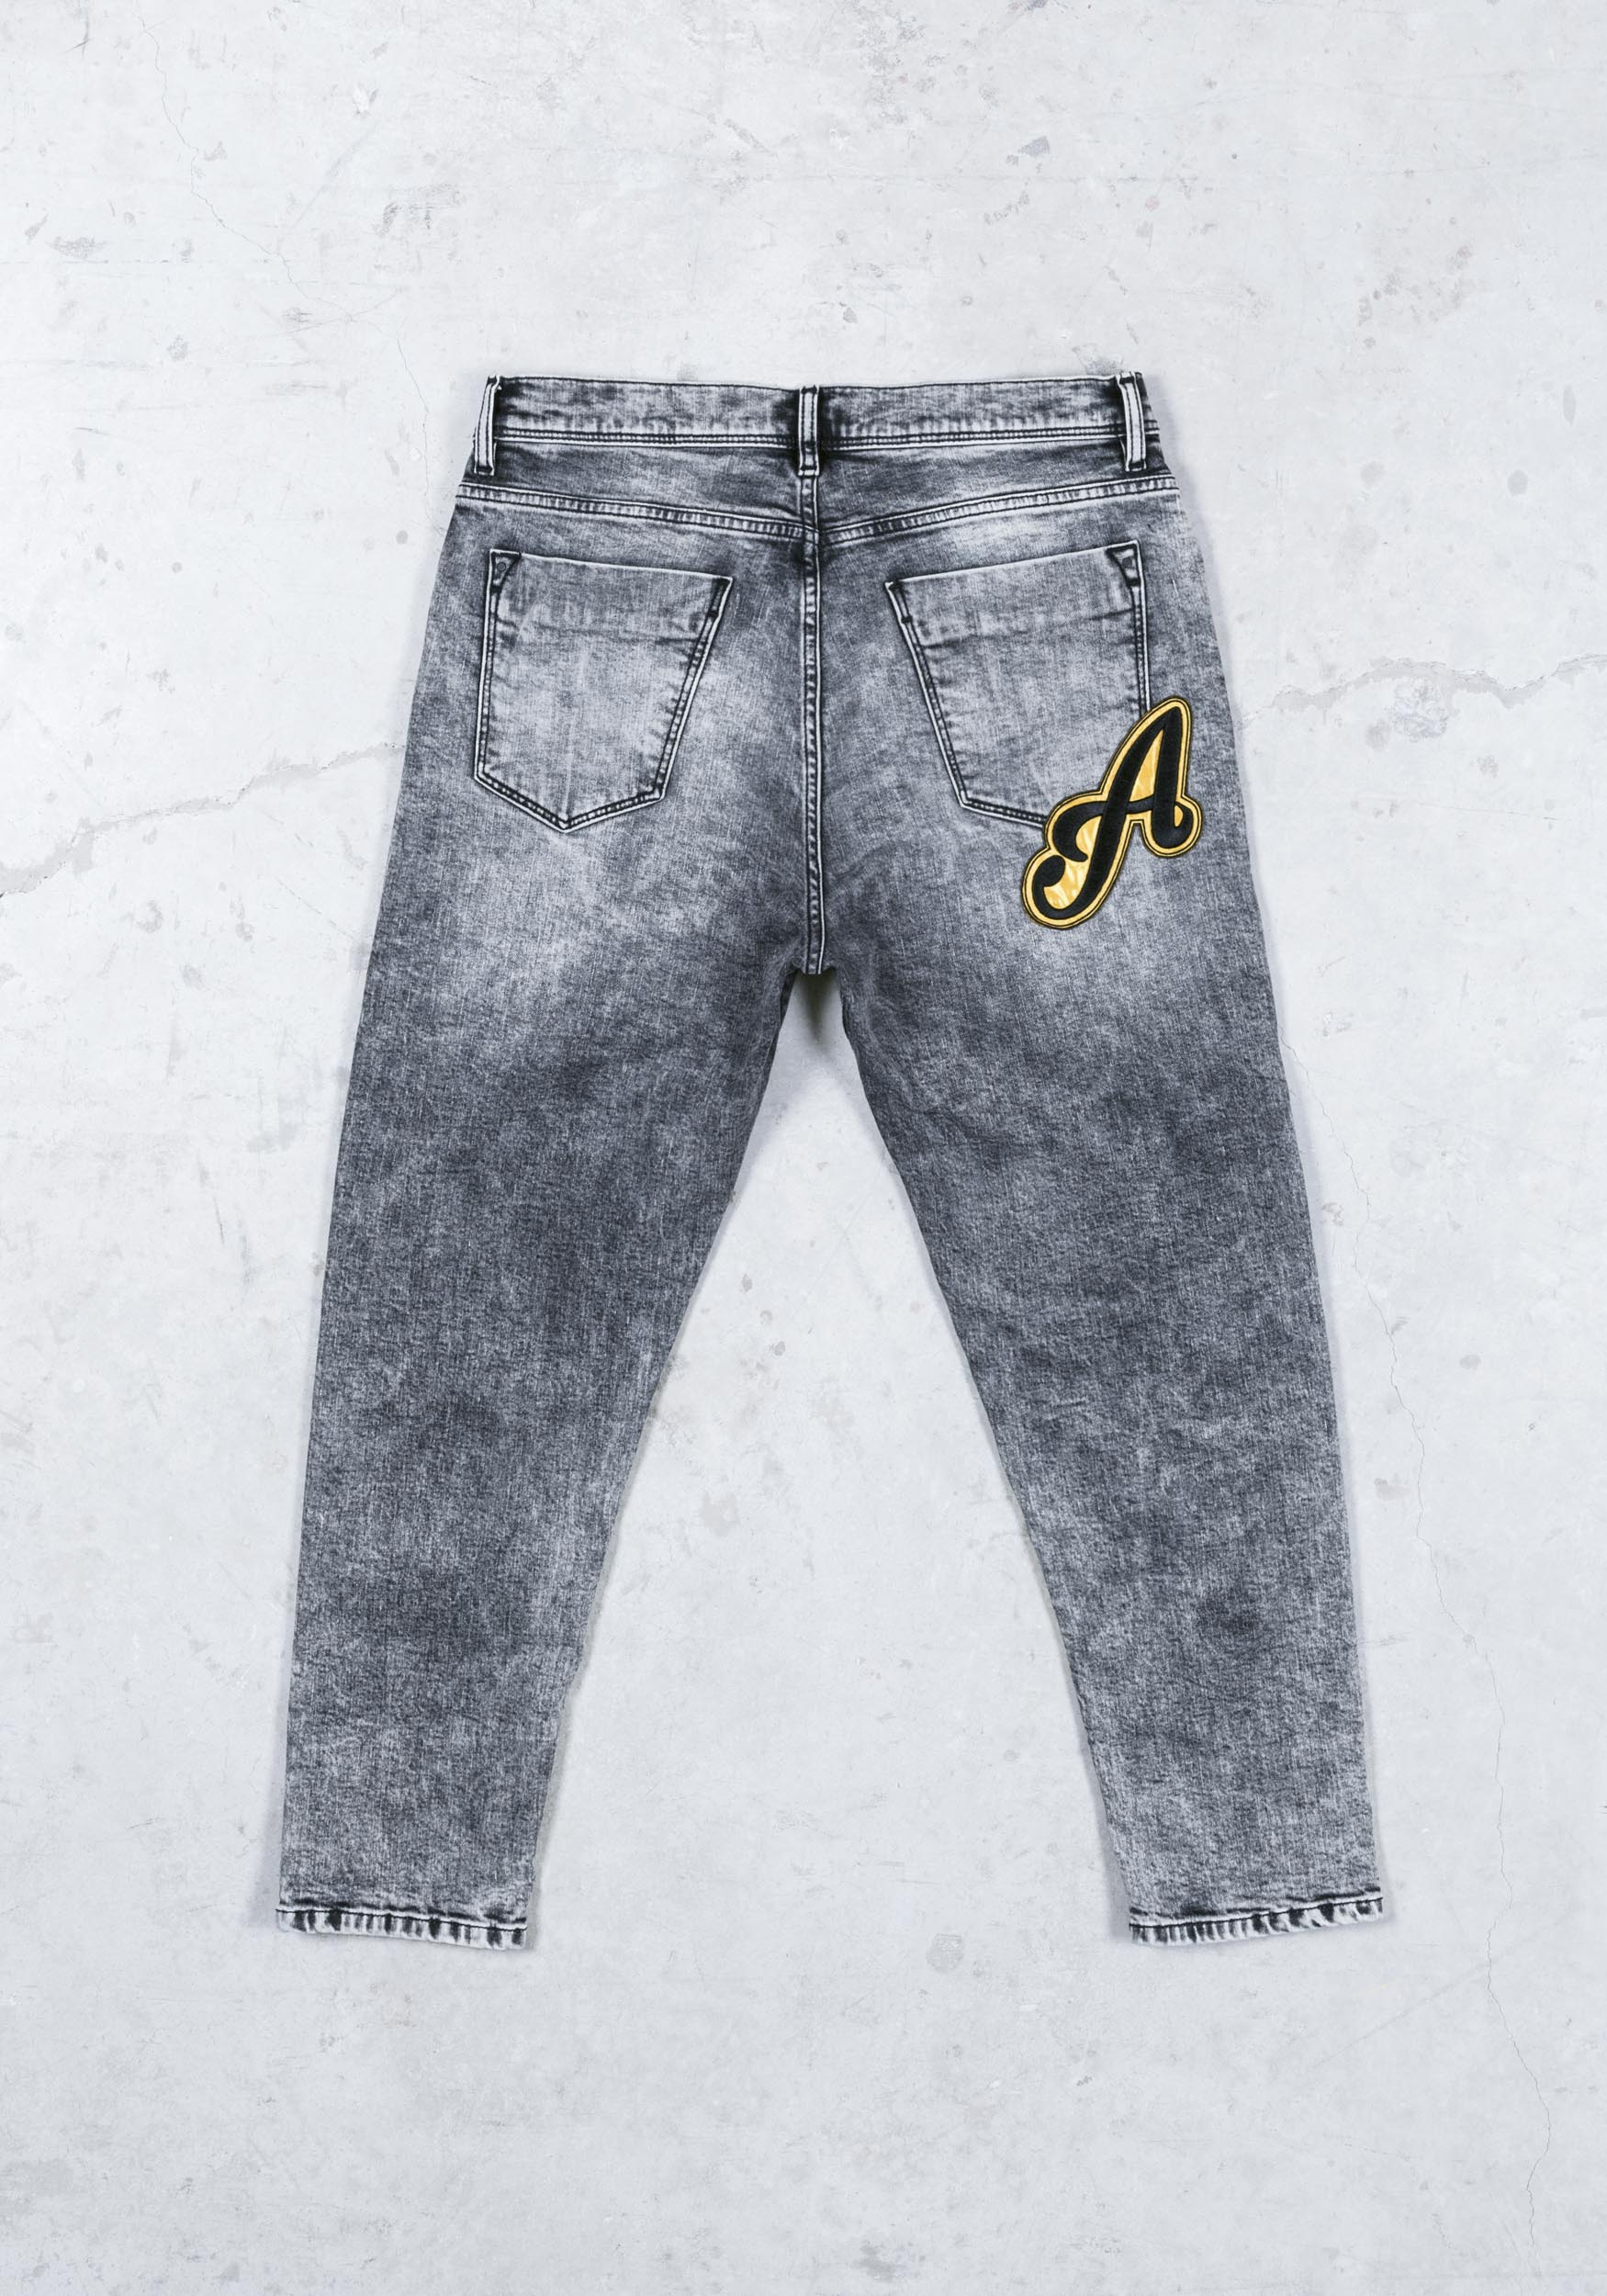 antony morato jeans sale